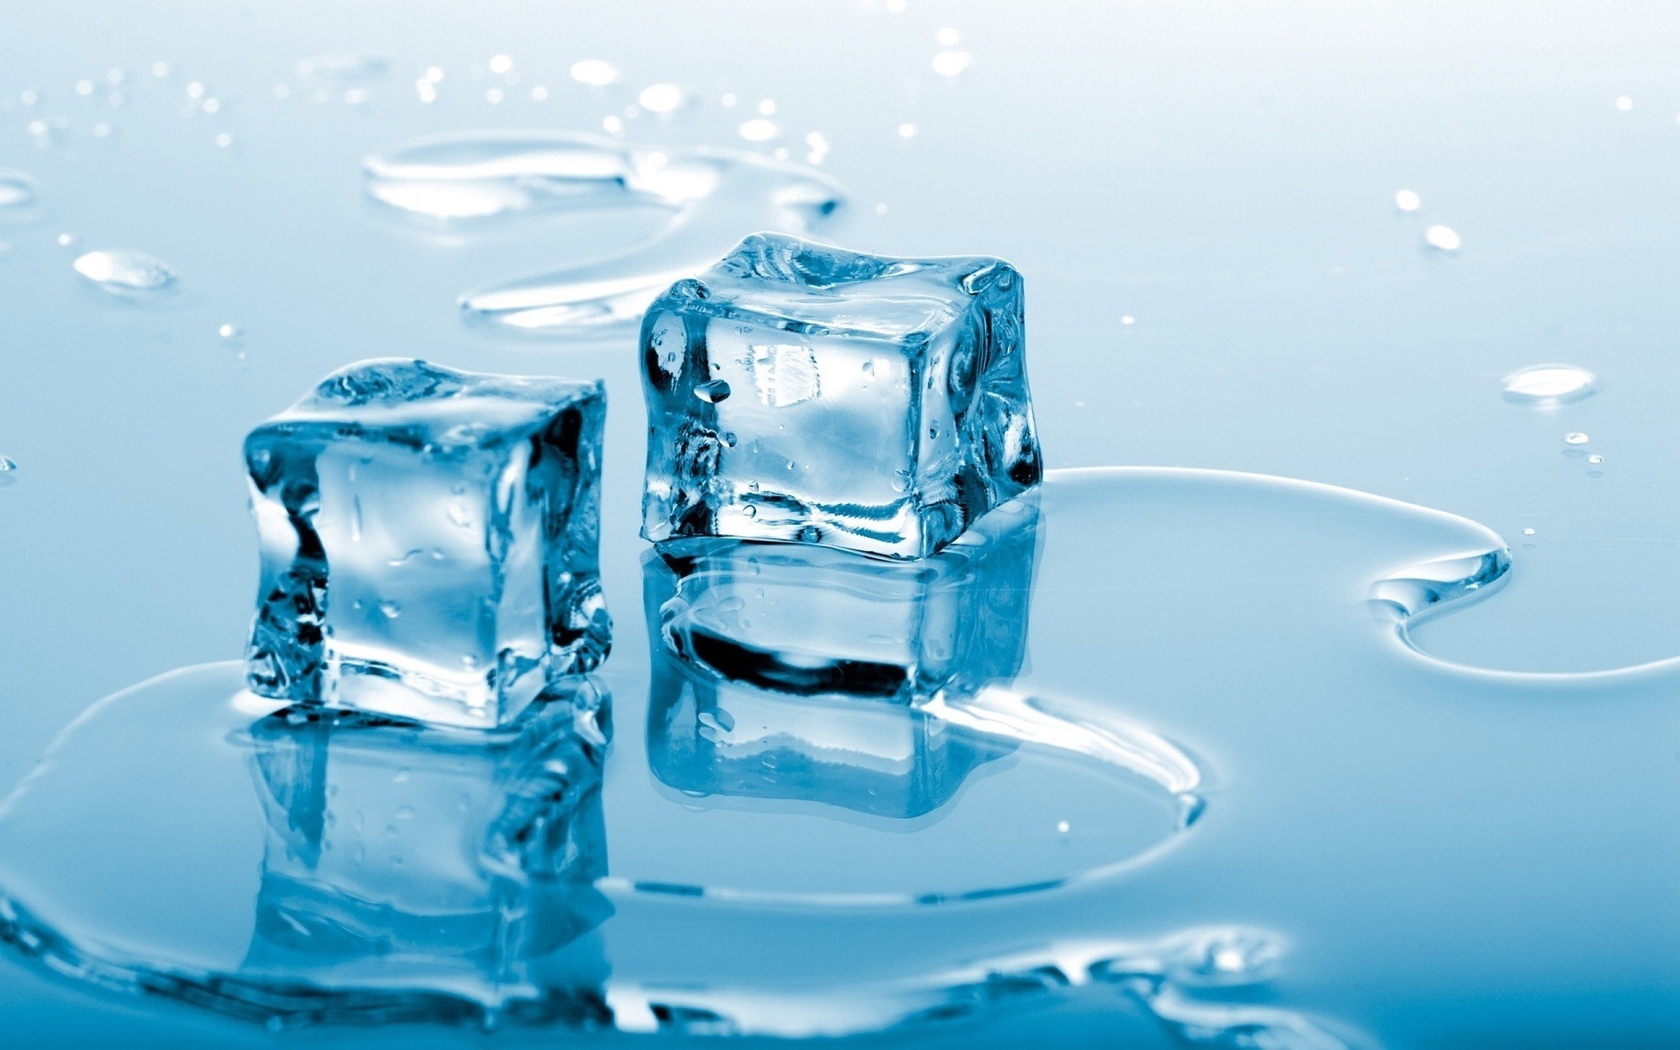 Картинка: Кубики, лёд, вода, стекло, отражение